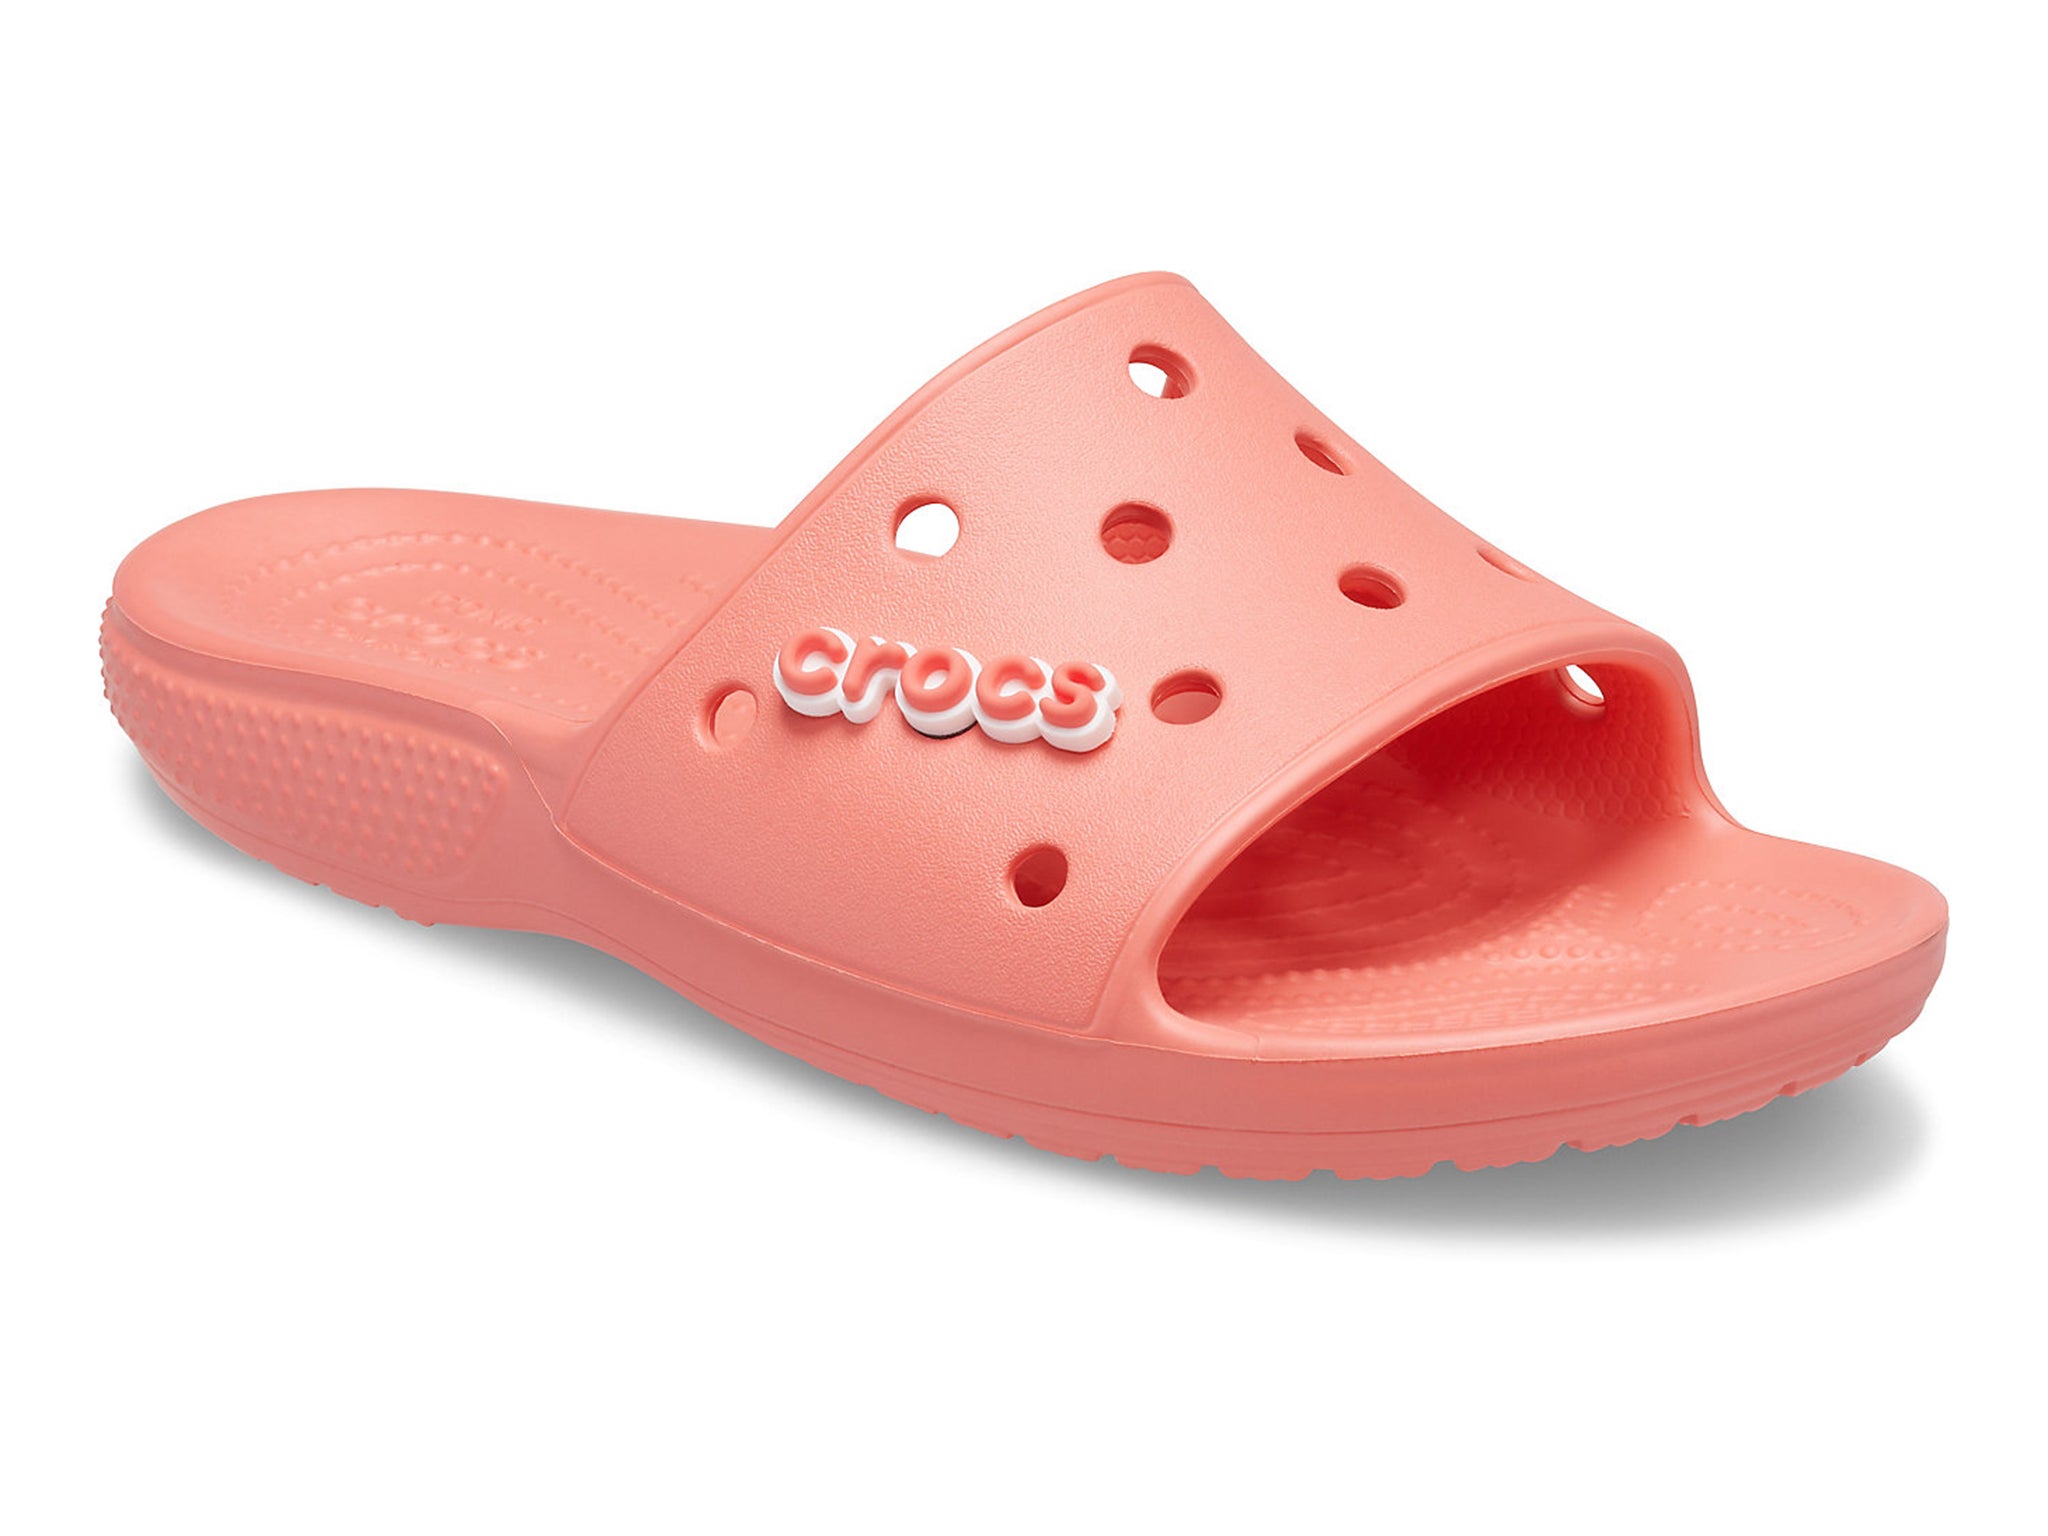 classic-crocs-slide-indybest.jpeg